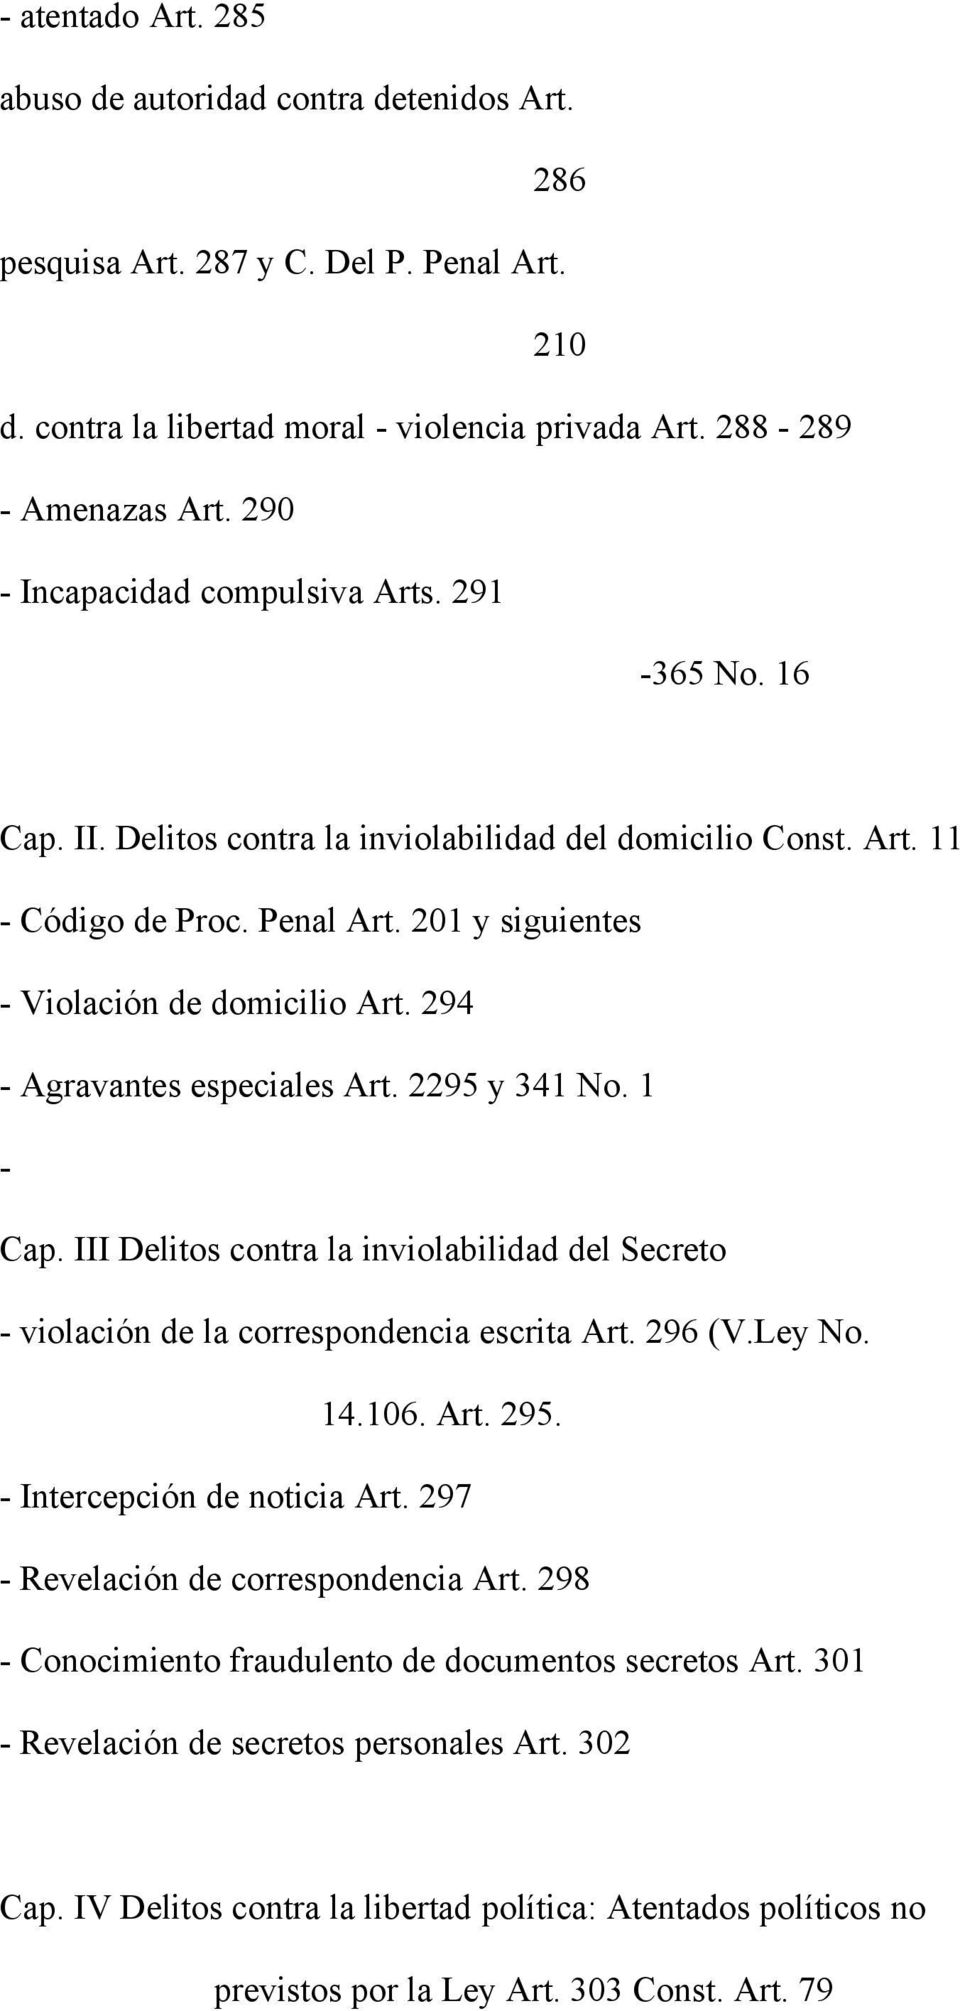 294 - Agravantes especiales Art. 2295 y 341 No. 1 - Cap. III Delitos contra la inviolabilidad del Secreto - violación de la correspondencia escrita Art. 296 (V.Ley No. 14.106. Art. 295.